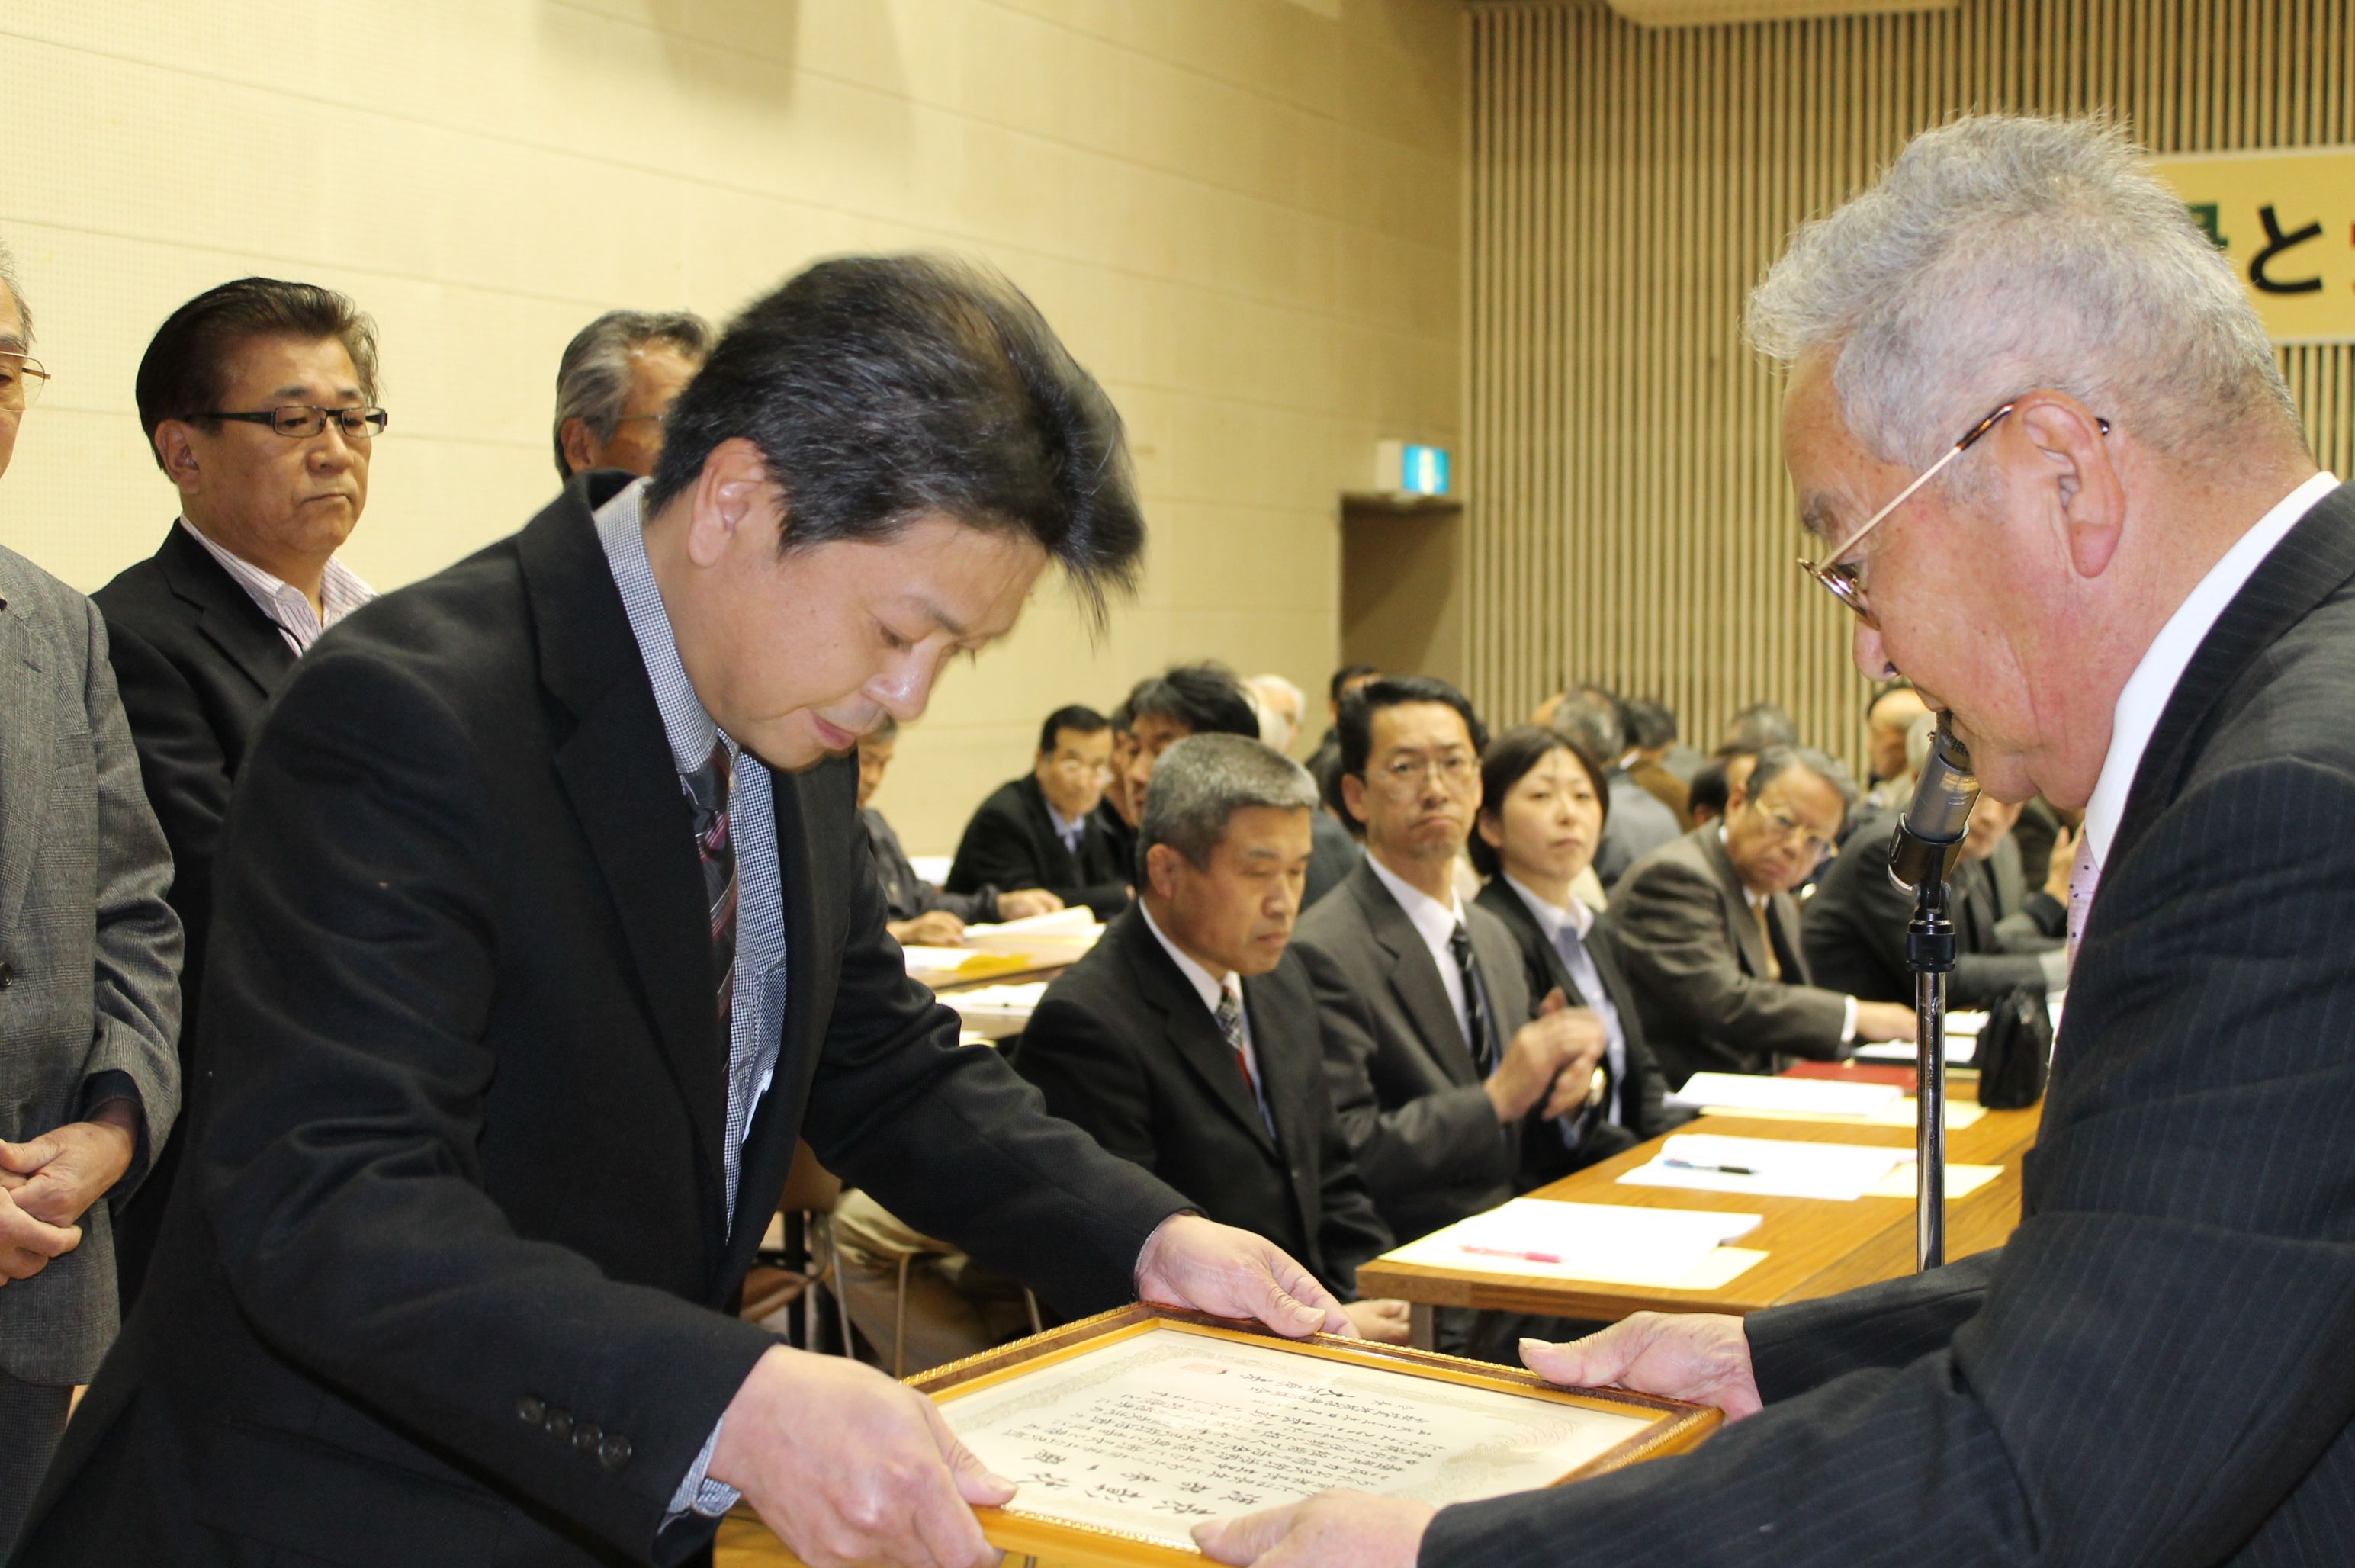 平成23年度小松地区地域振興協議会総会が開催されました。